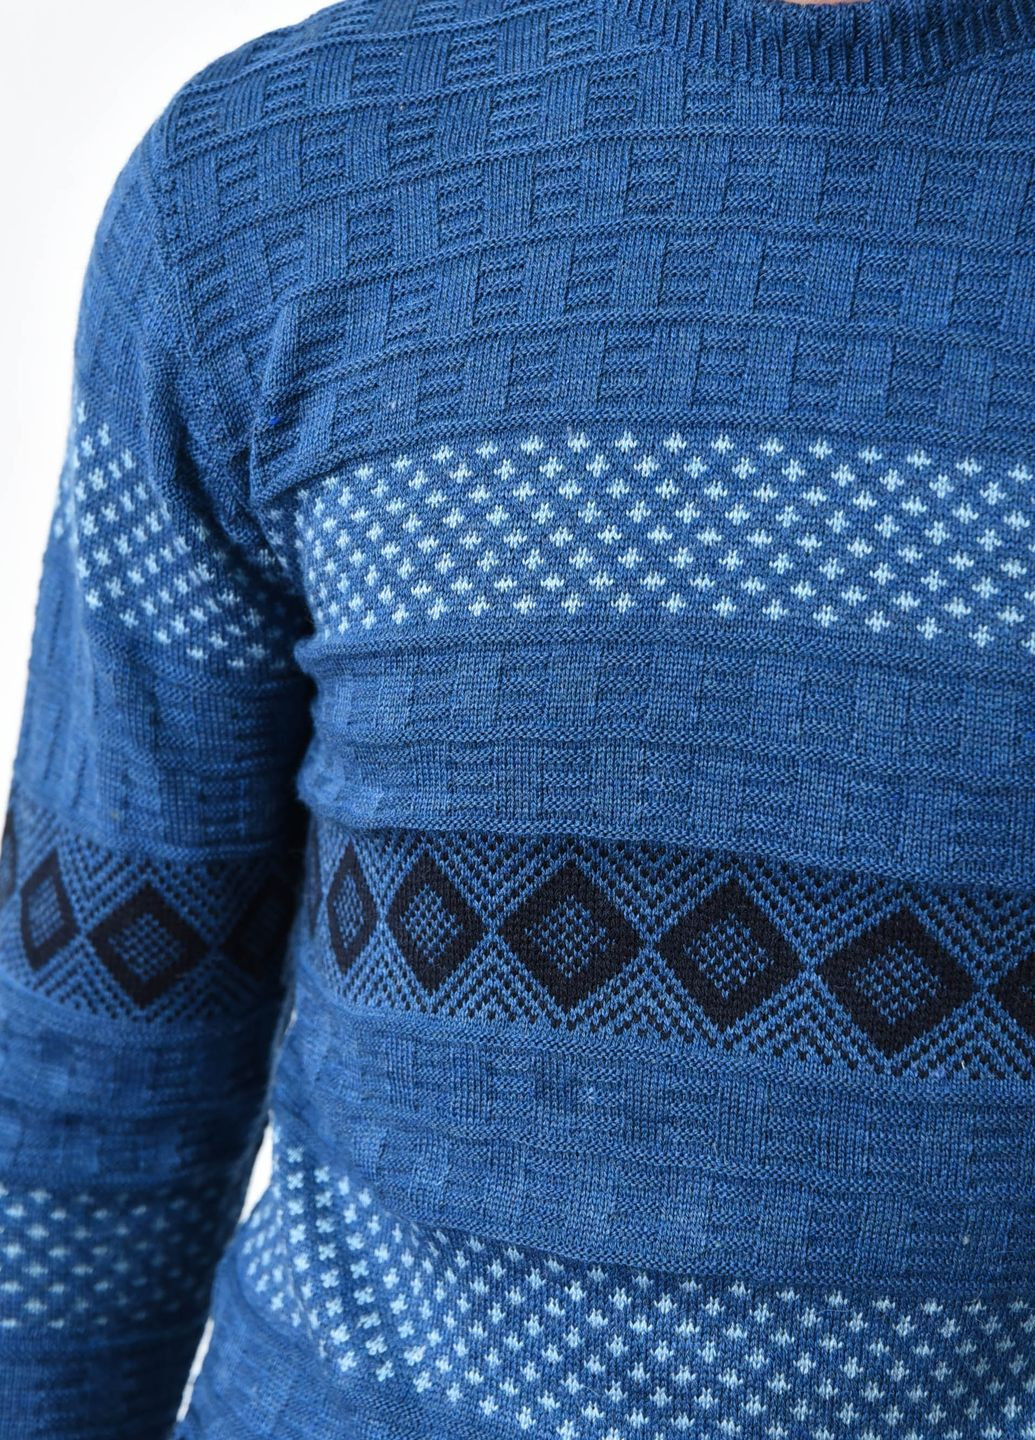 Синий демисезонный свитер мужской синего цвета акриловый пуловер Let's Shop